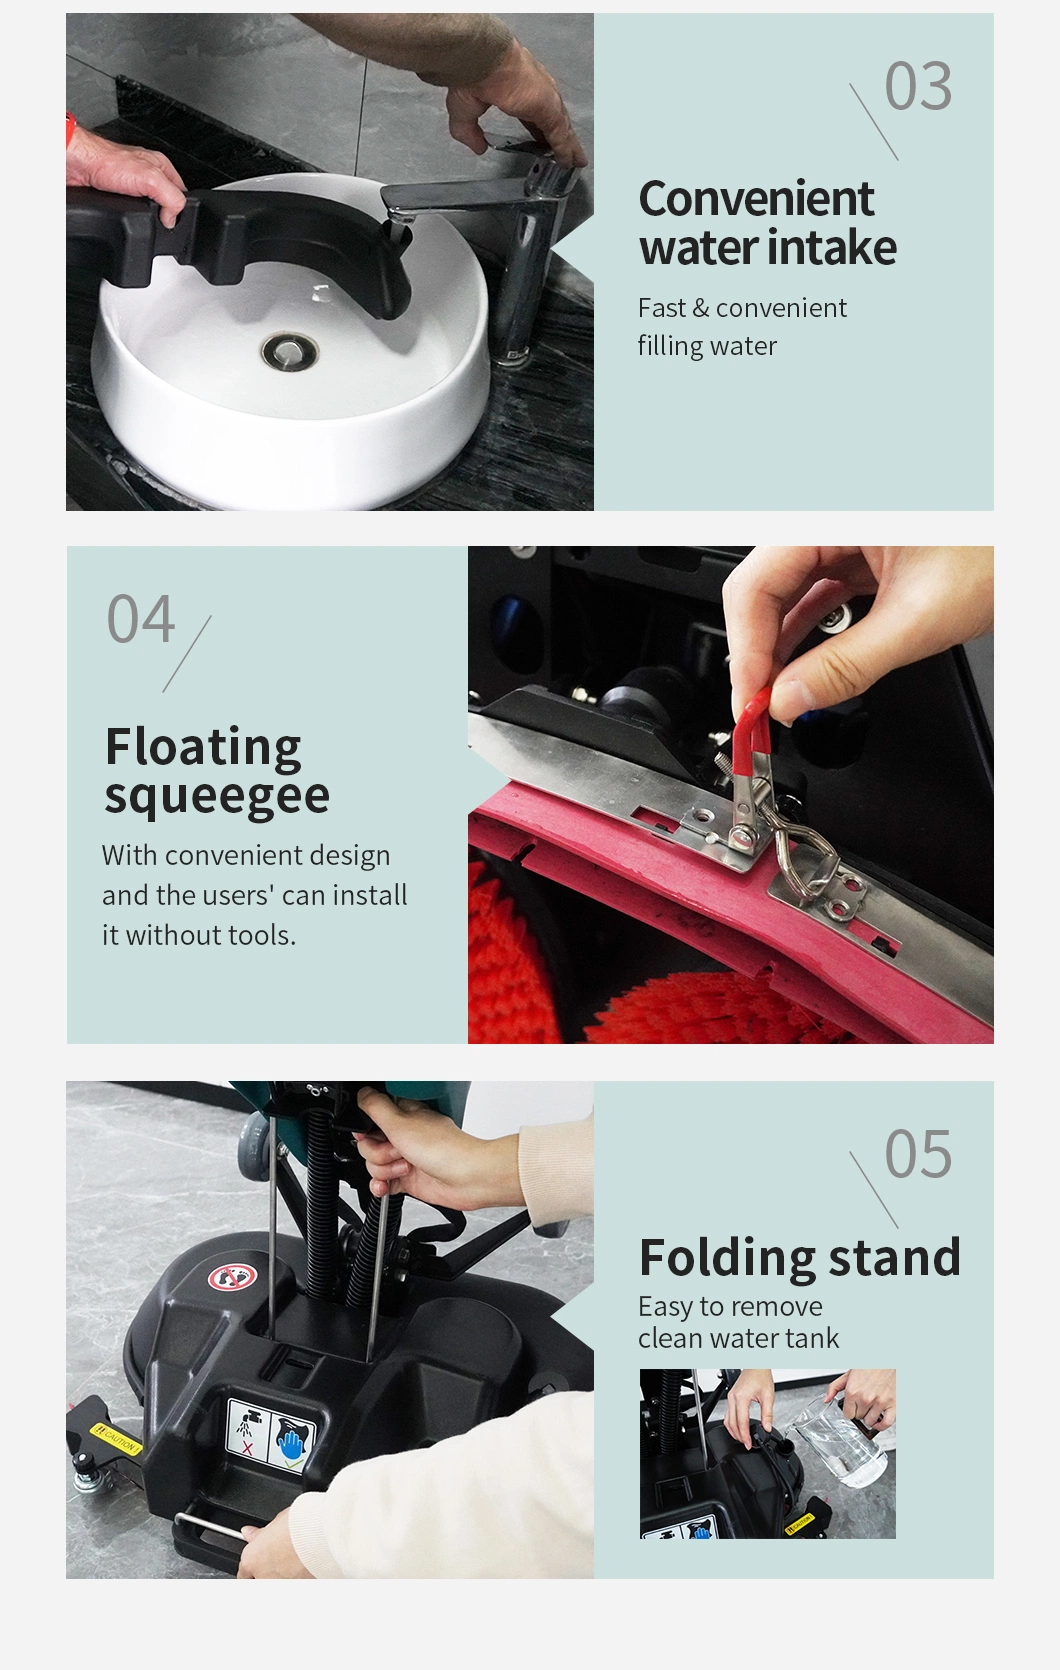 Commercial Floor Scrubber Machine Hand Push Mini Mop Adjustable Water Flow